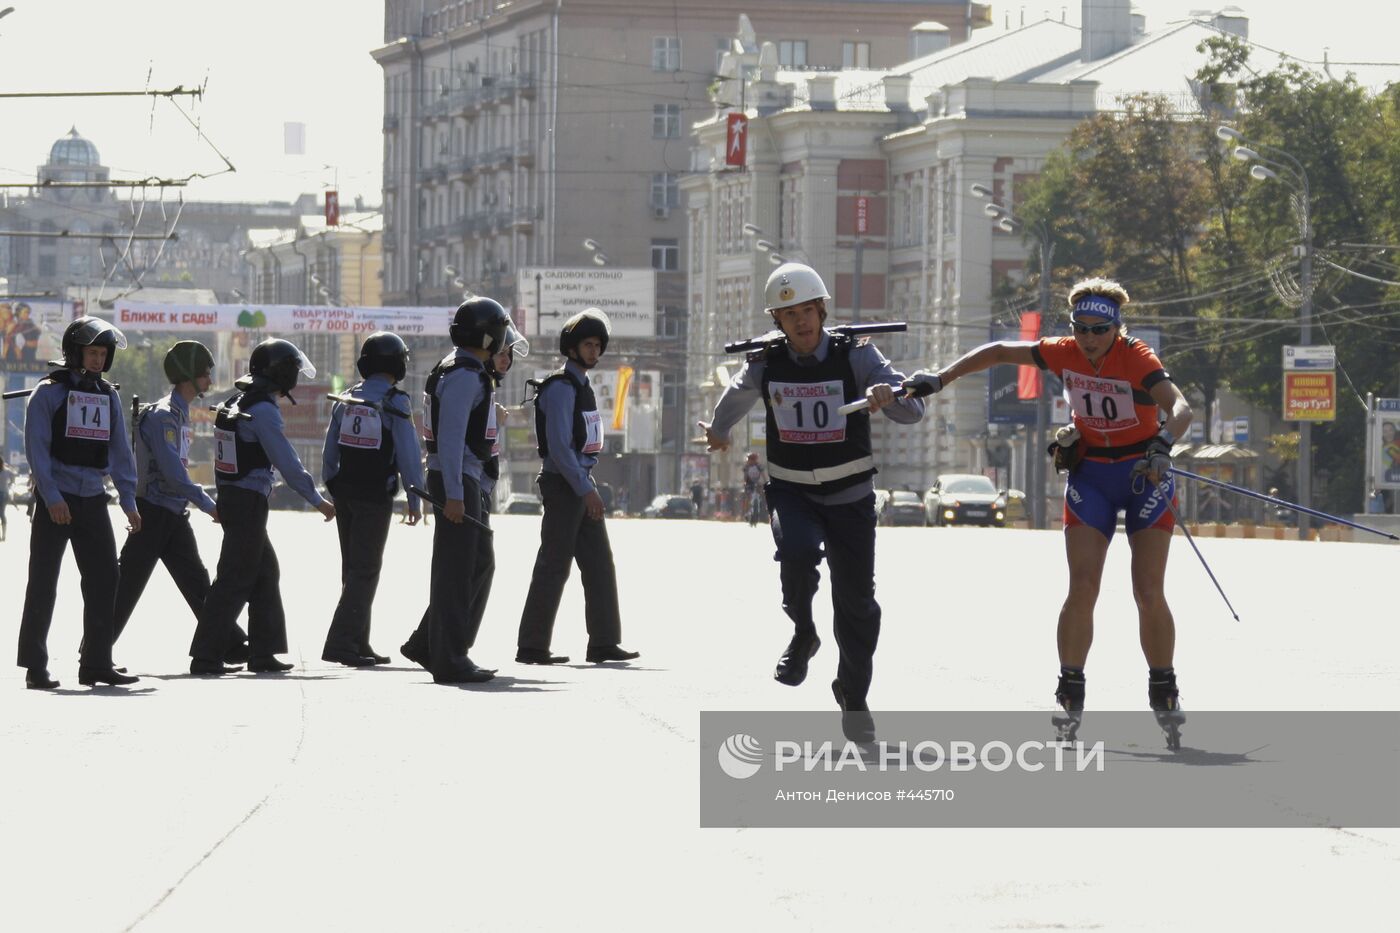 Комбинированная эстафета московской милиции прошла в Москве